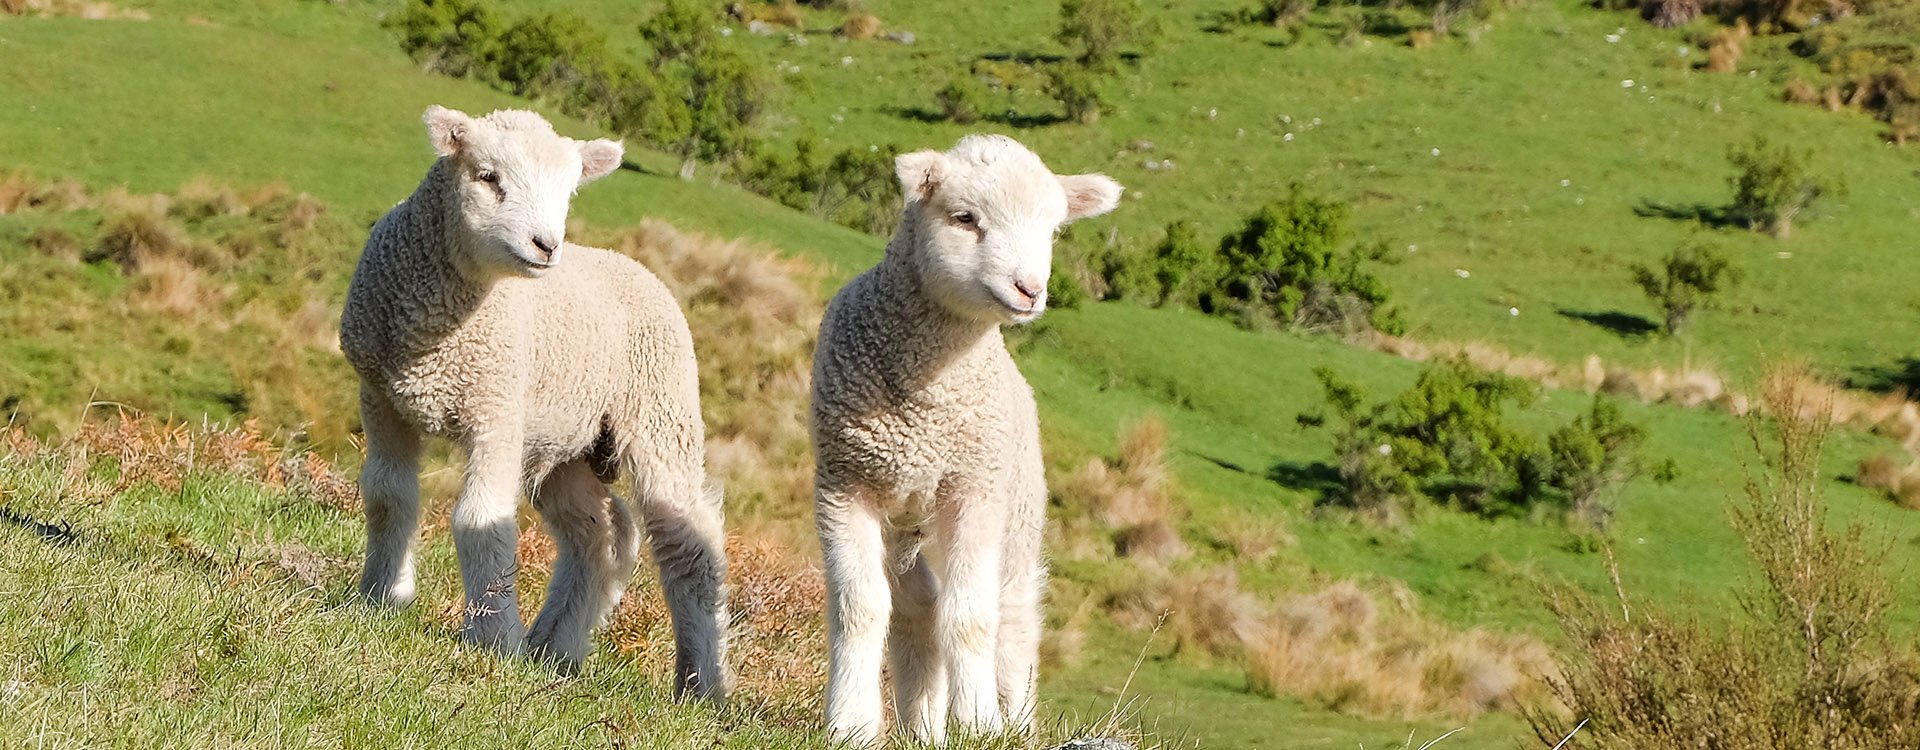 Two Lambs. Queenstown, New Zealand